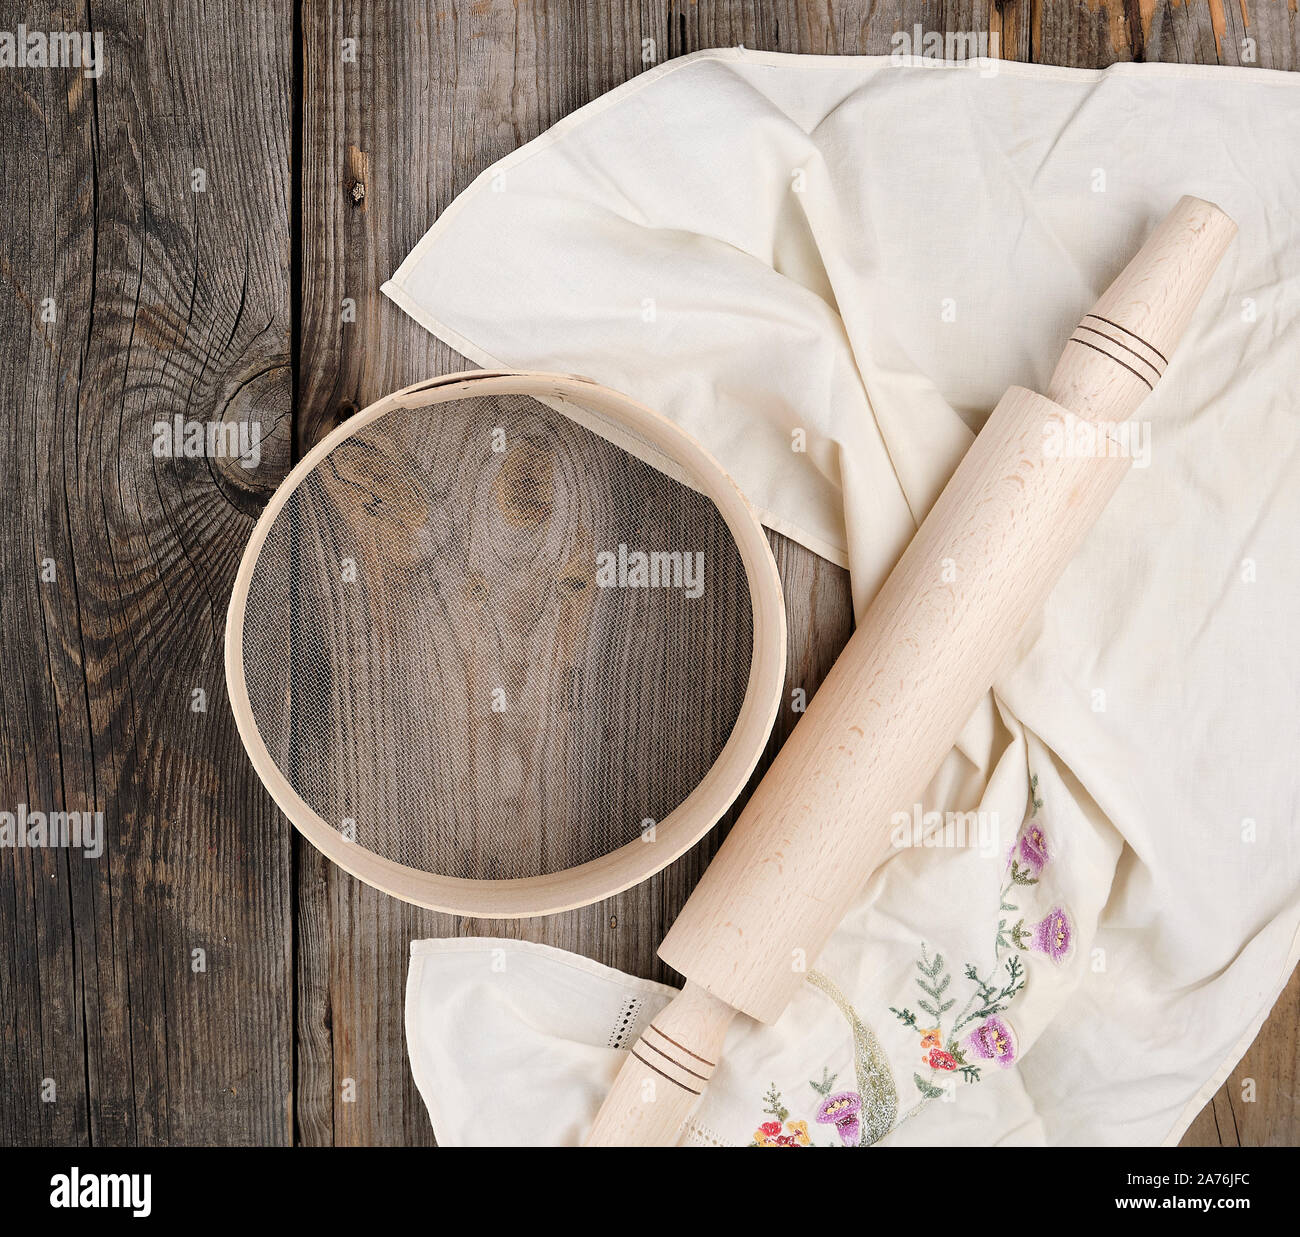 Neue Holz- Rolling Pin auf ein Textil Serviette mit Stickerei und eine runde Sieb für Mehl, grau Holz- Hintergrund Stockfoto